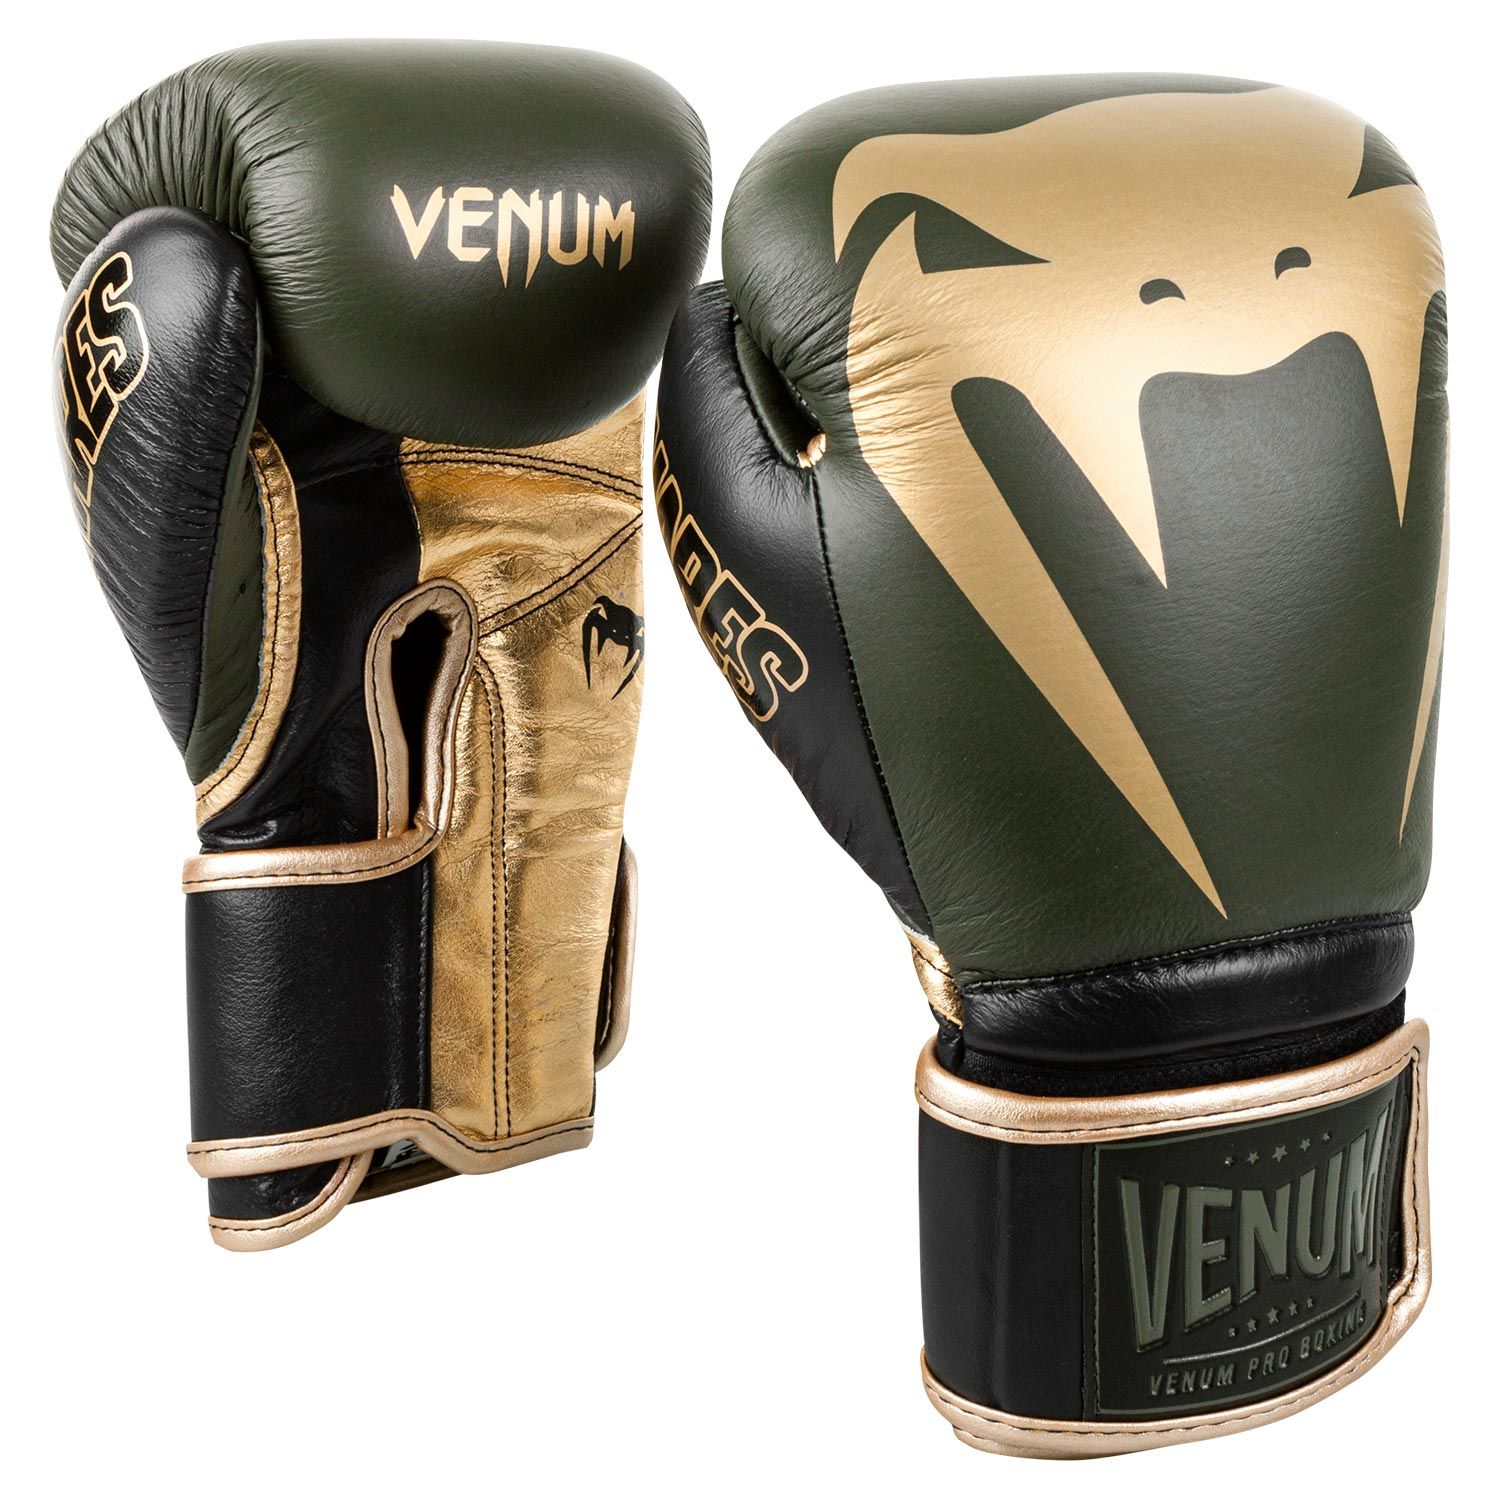 Venum Giant 2.0 Pro bokshandschoenen Linares-editie - met klittenband - kaki/zwart/goud